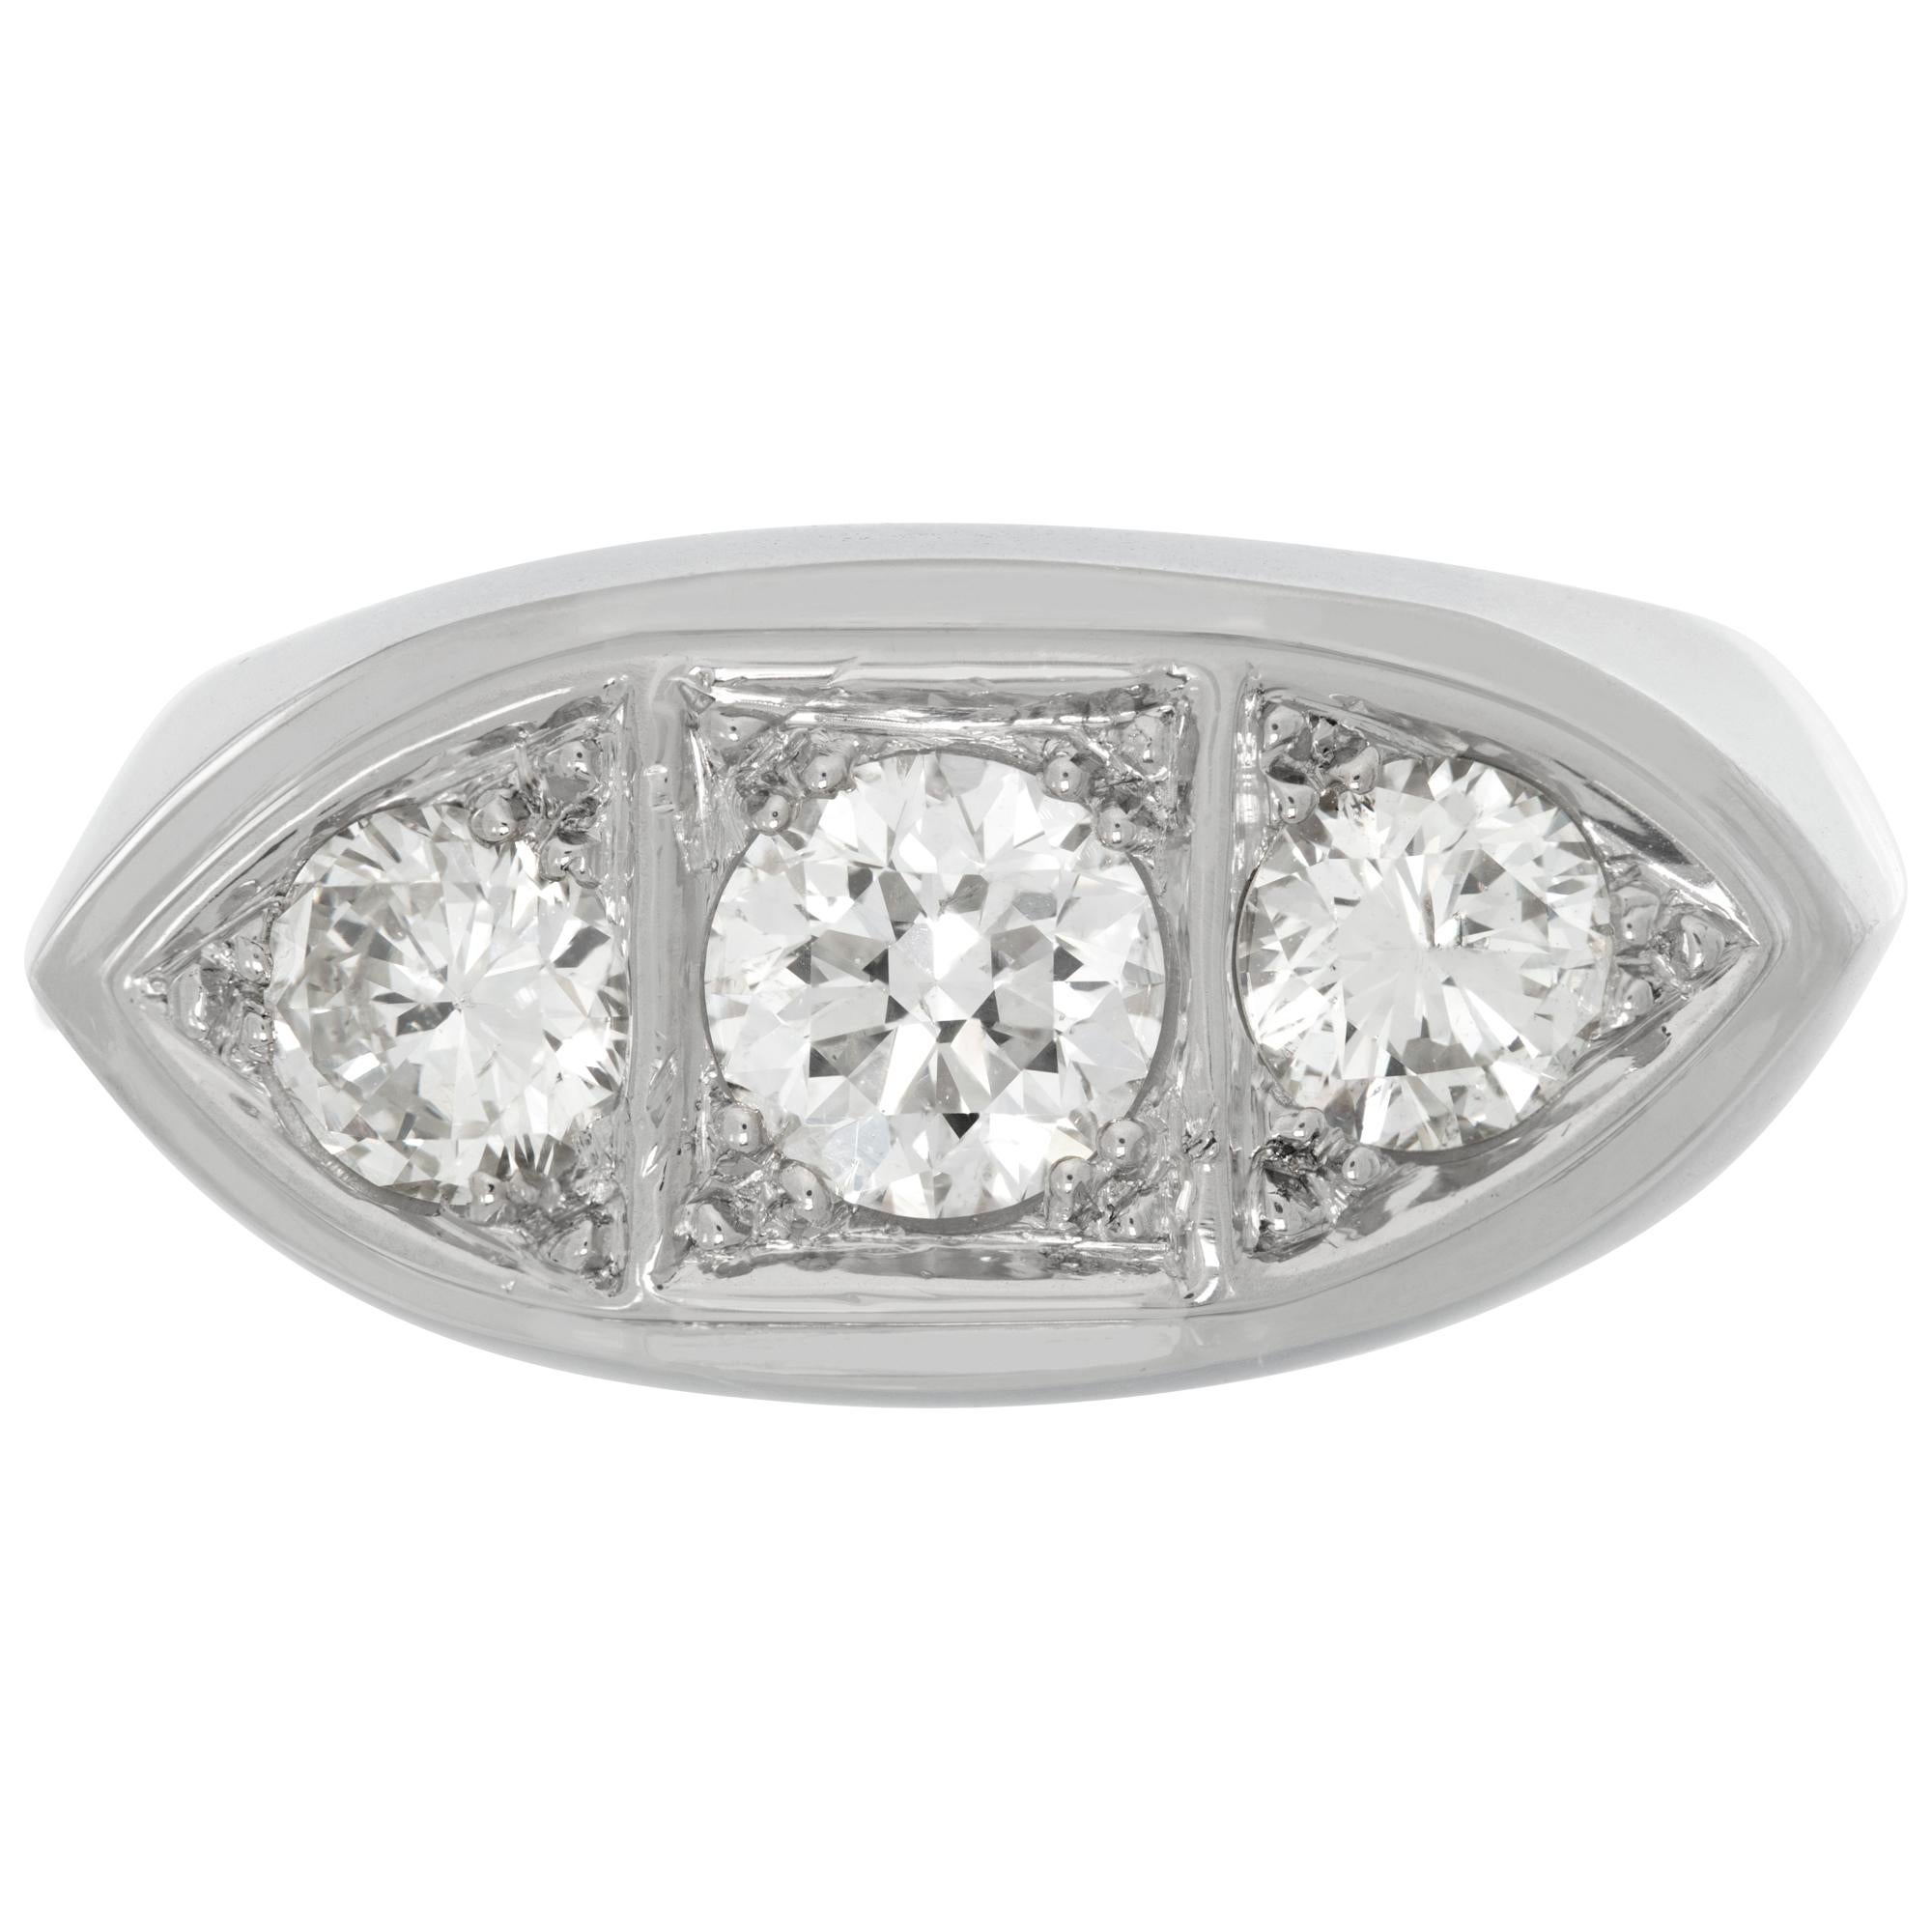 GIA-zertifizierter Ring mit rundem Brillanten von 1,00 Karat (Farbe E, Reinheit I2) in robuster Platinfassung mit 2 seitlichen Diamanten von 0,50 Karat (Farbe G-H, Reinheit SI-I). Größe 9Dieser GIA-zertifizierte Ring ist derzeit Größe 9 und einige